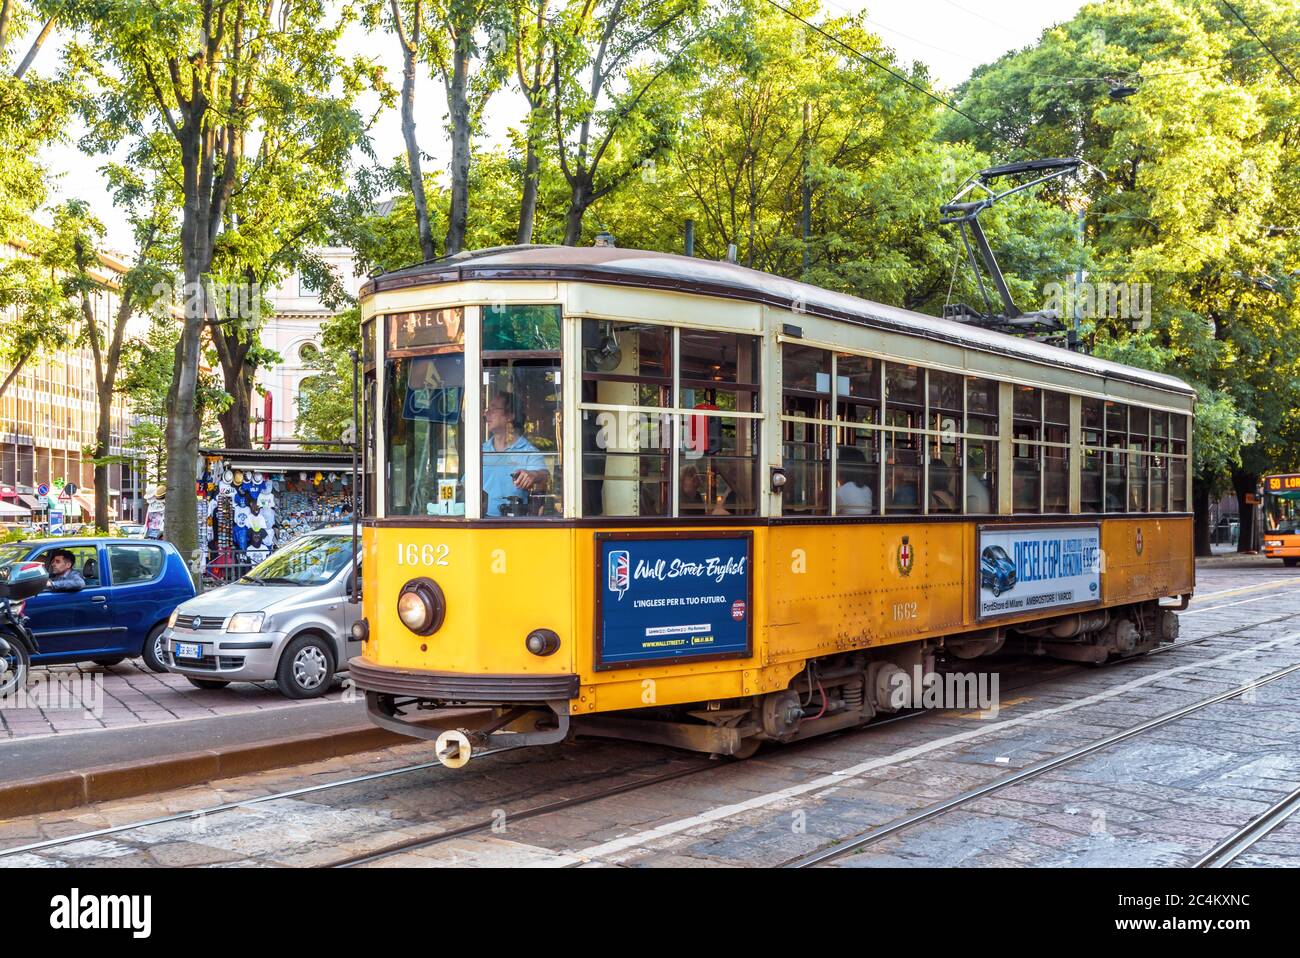 Mailand, Italien - 22. Mai 2017: Gelbe Vintage-Straßenbahn in Mailand. Die Straßenbahn ist ein beliebtes Verkehrsmittel in der Stadt. Retro-Fahrzeug auf der Mailänder Straße. Stockfoto